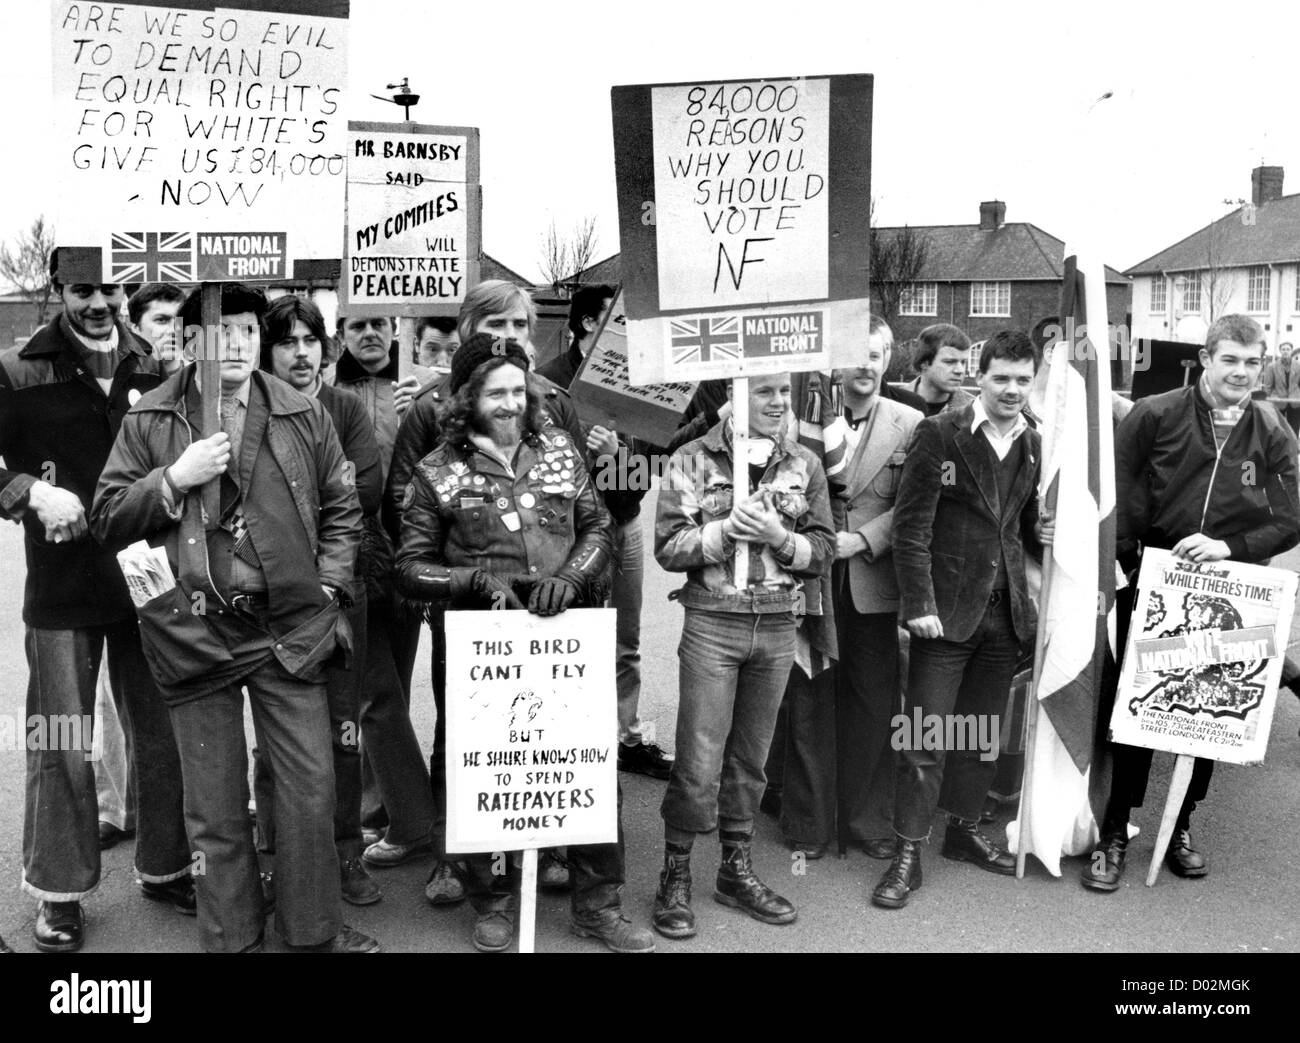 marche du Front national à Wolverhampton 1981. Grande-Bretagne Angleterre anglaise Anglais des années 1980 politique rassemblement politique action de la classe ouvrière d'extrême droite les rues de rue protestent contre le Royaume-Uni. PHOTO DE DAVID BAGNALL Banque D'Images